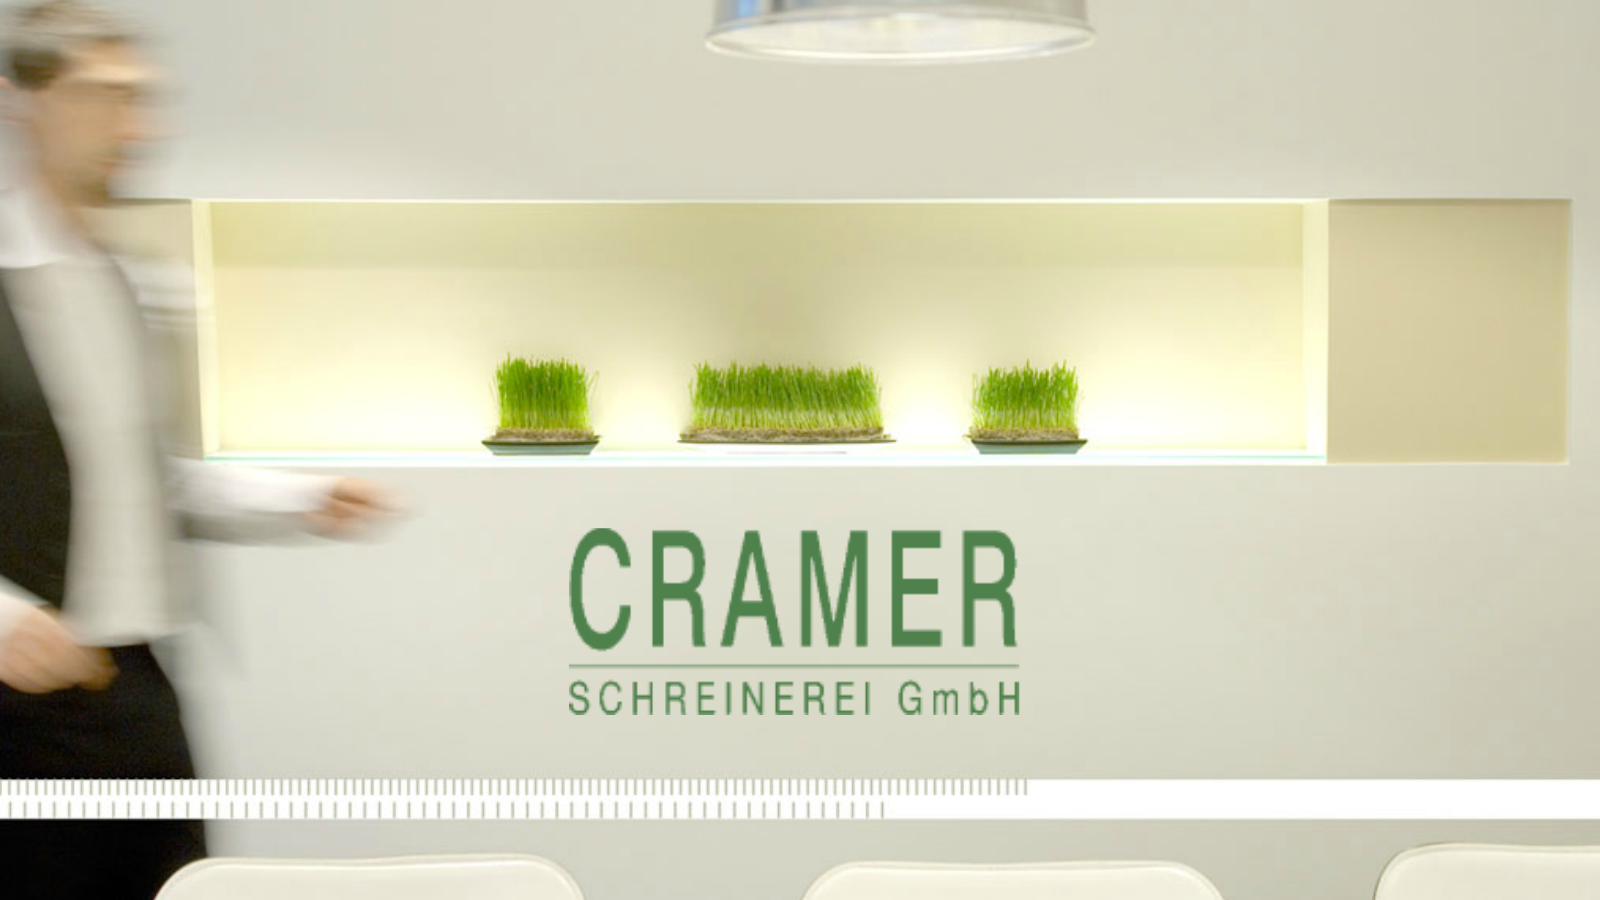 ➤ Cramer Schreinerei GmbH 50735 Köln-Niehl Öffnungszeiten | Adresse | Telefon 0